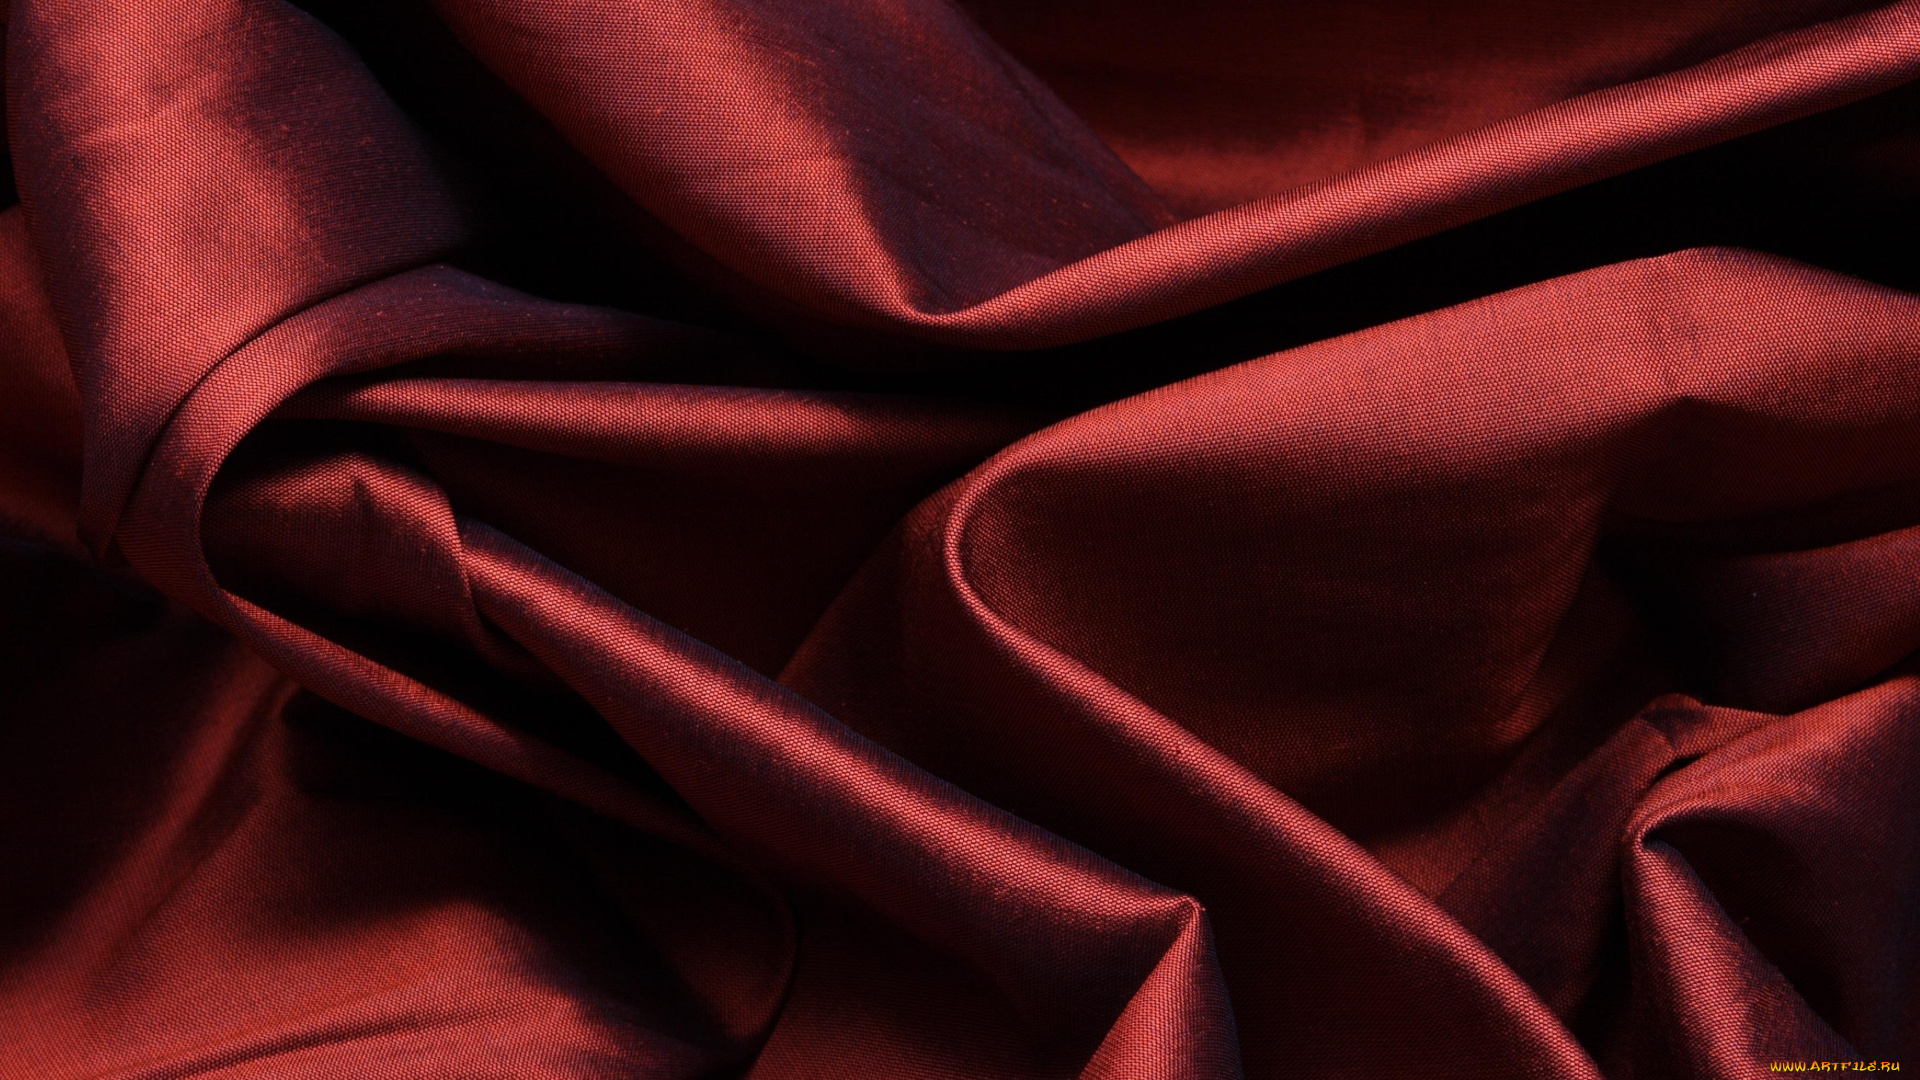 разное, текстуры, тень, темная, бордовая, красная, ткань, складки